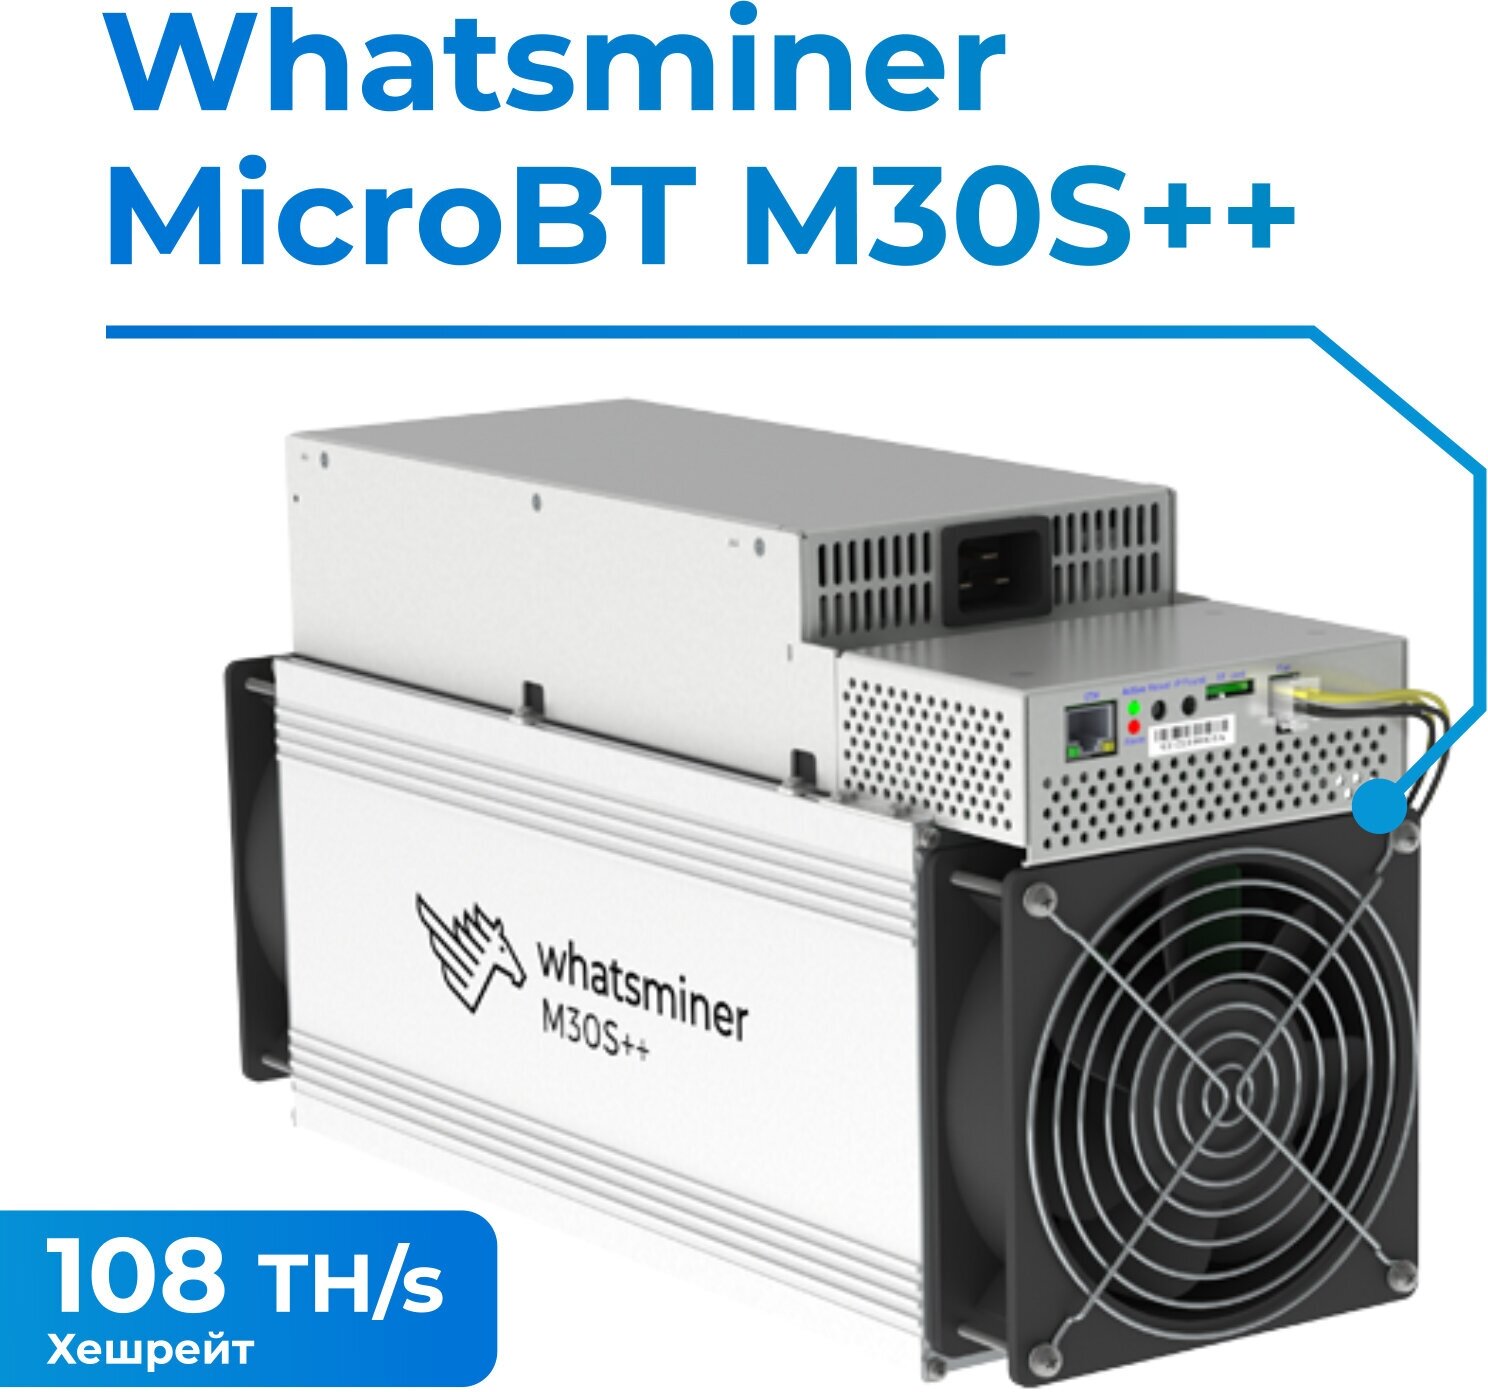 Асик Whatsminer M30S++ 108TH/s с ГТД для майнинга криптовалюты + кабель в комплекте